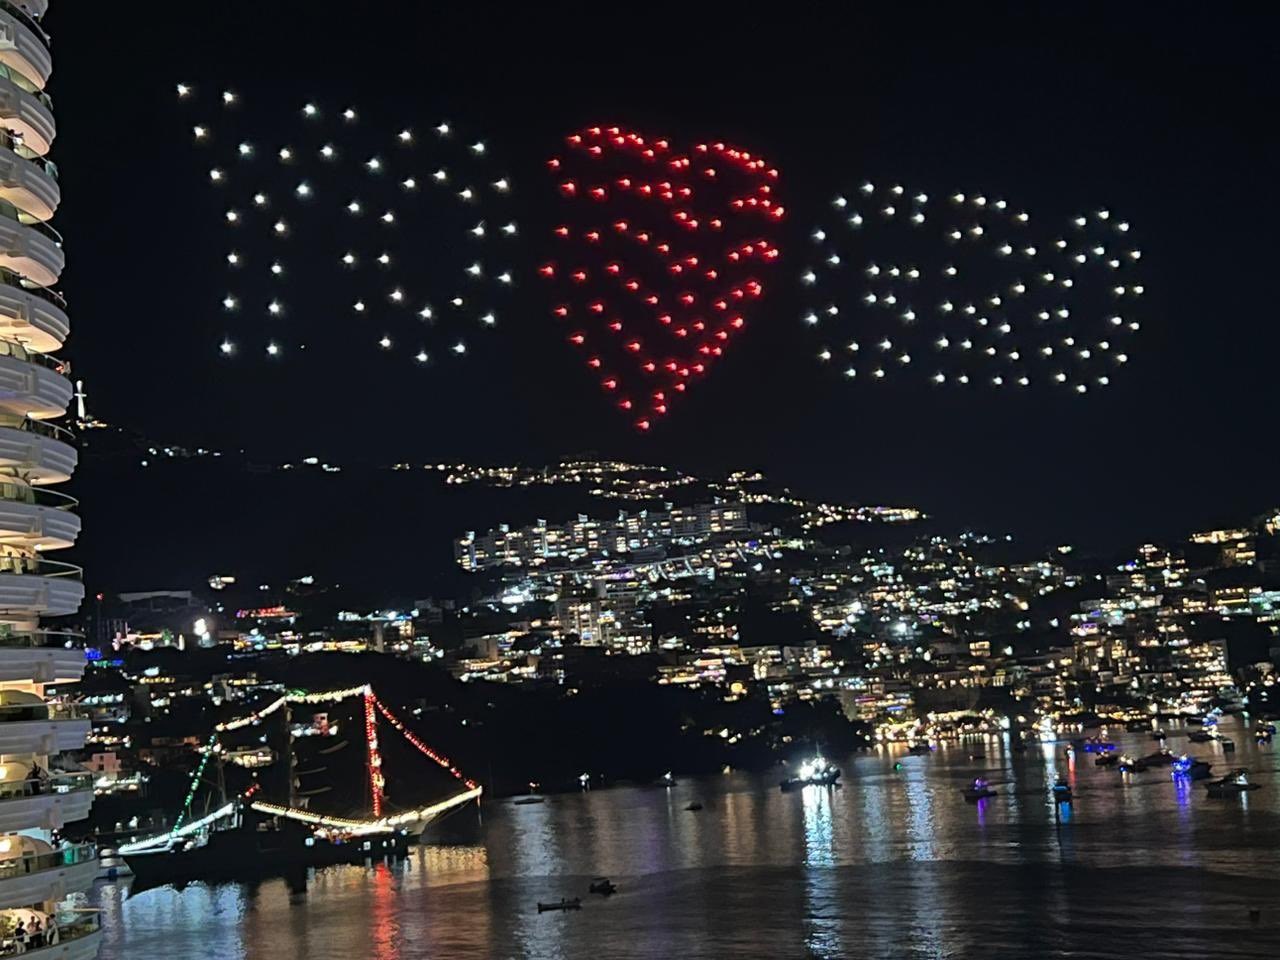 Acapulco da bienvenida al 2023 con espectacular show de luces y pirotecnia